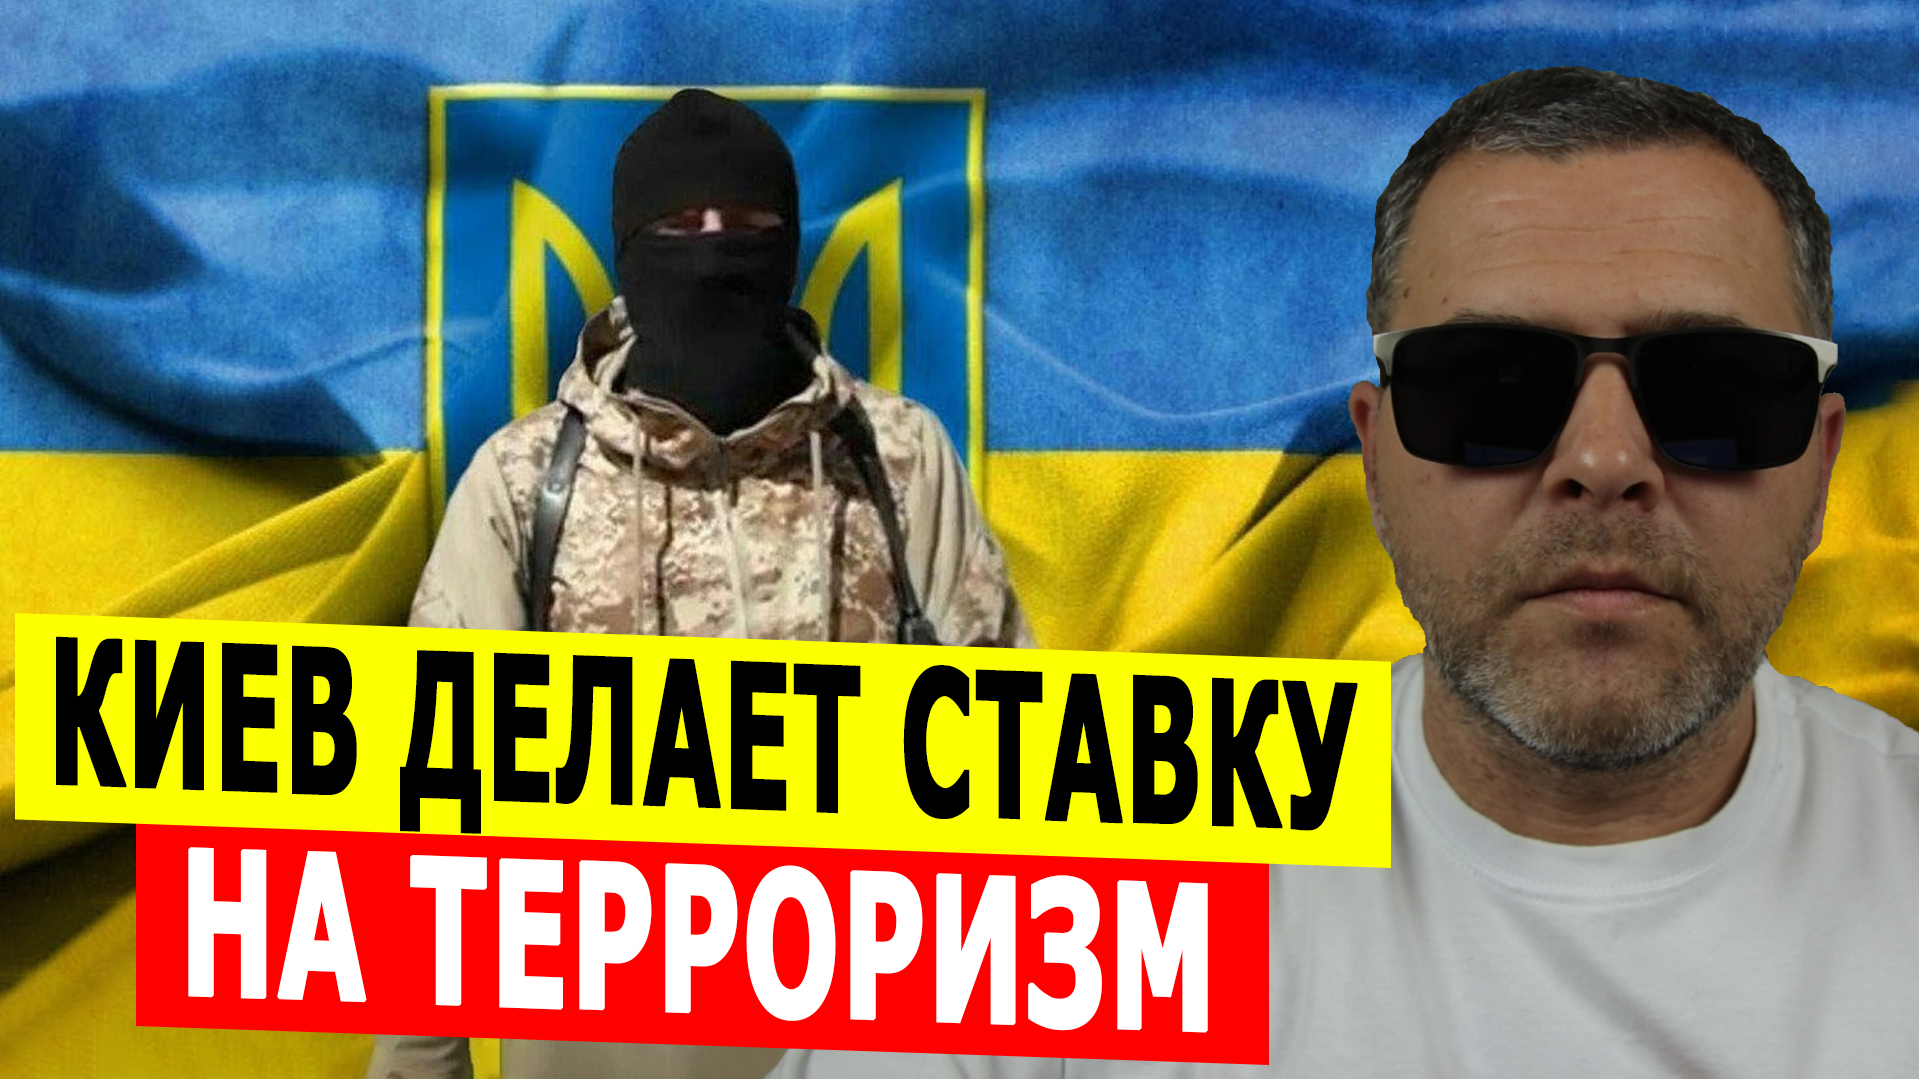 Киев делает ставку на терроризм